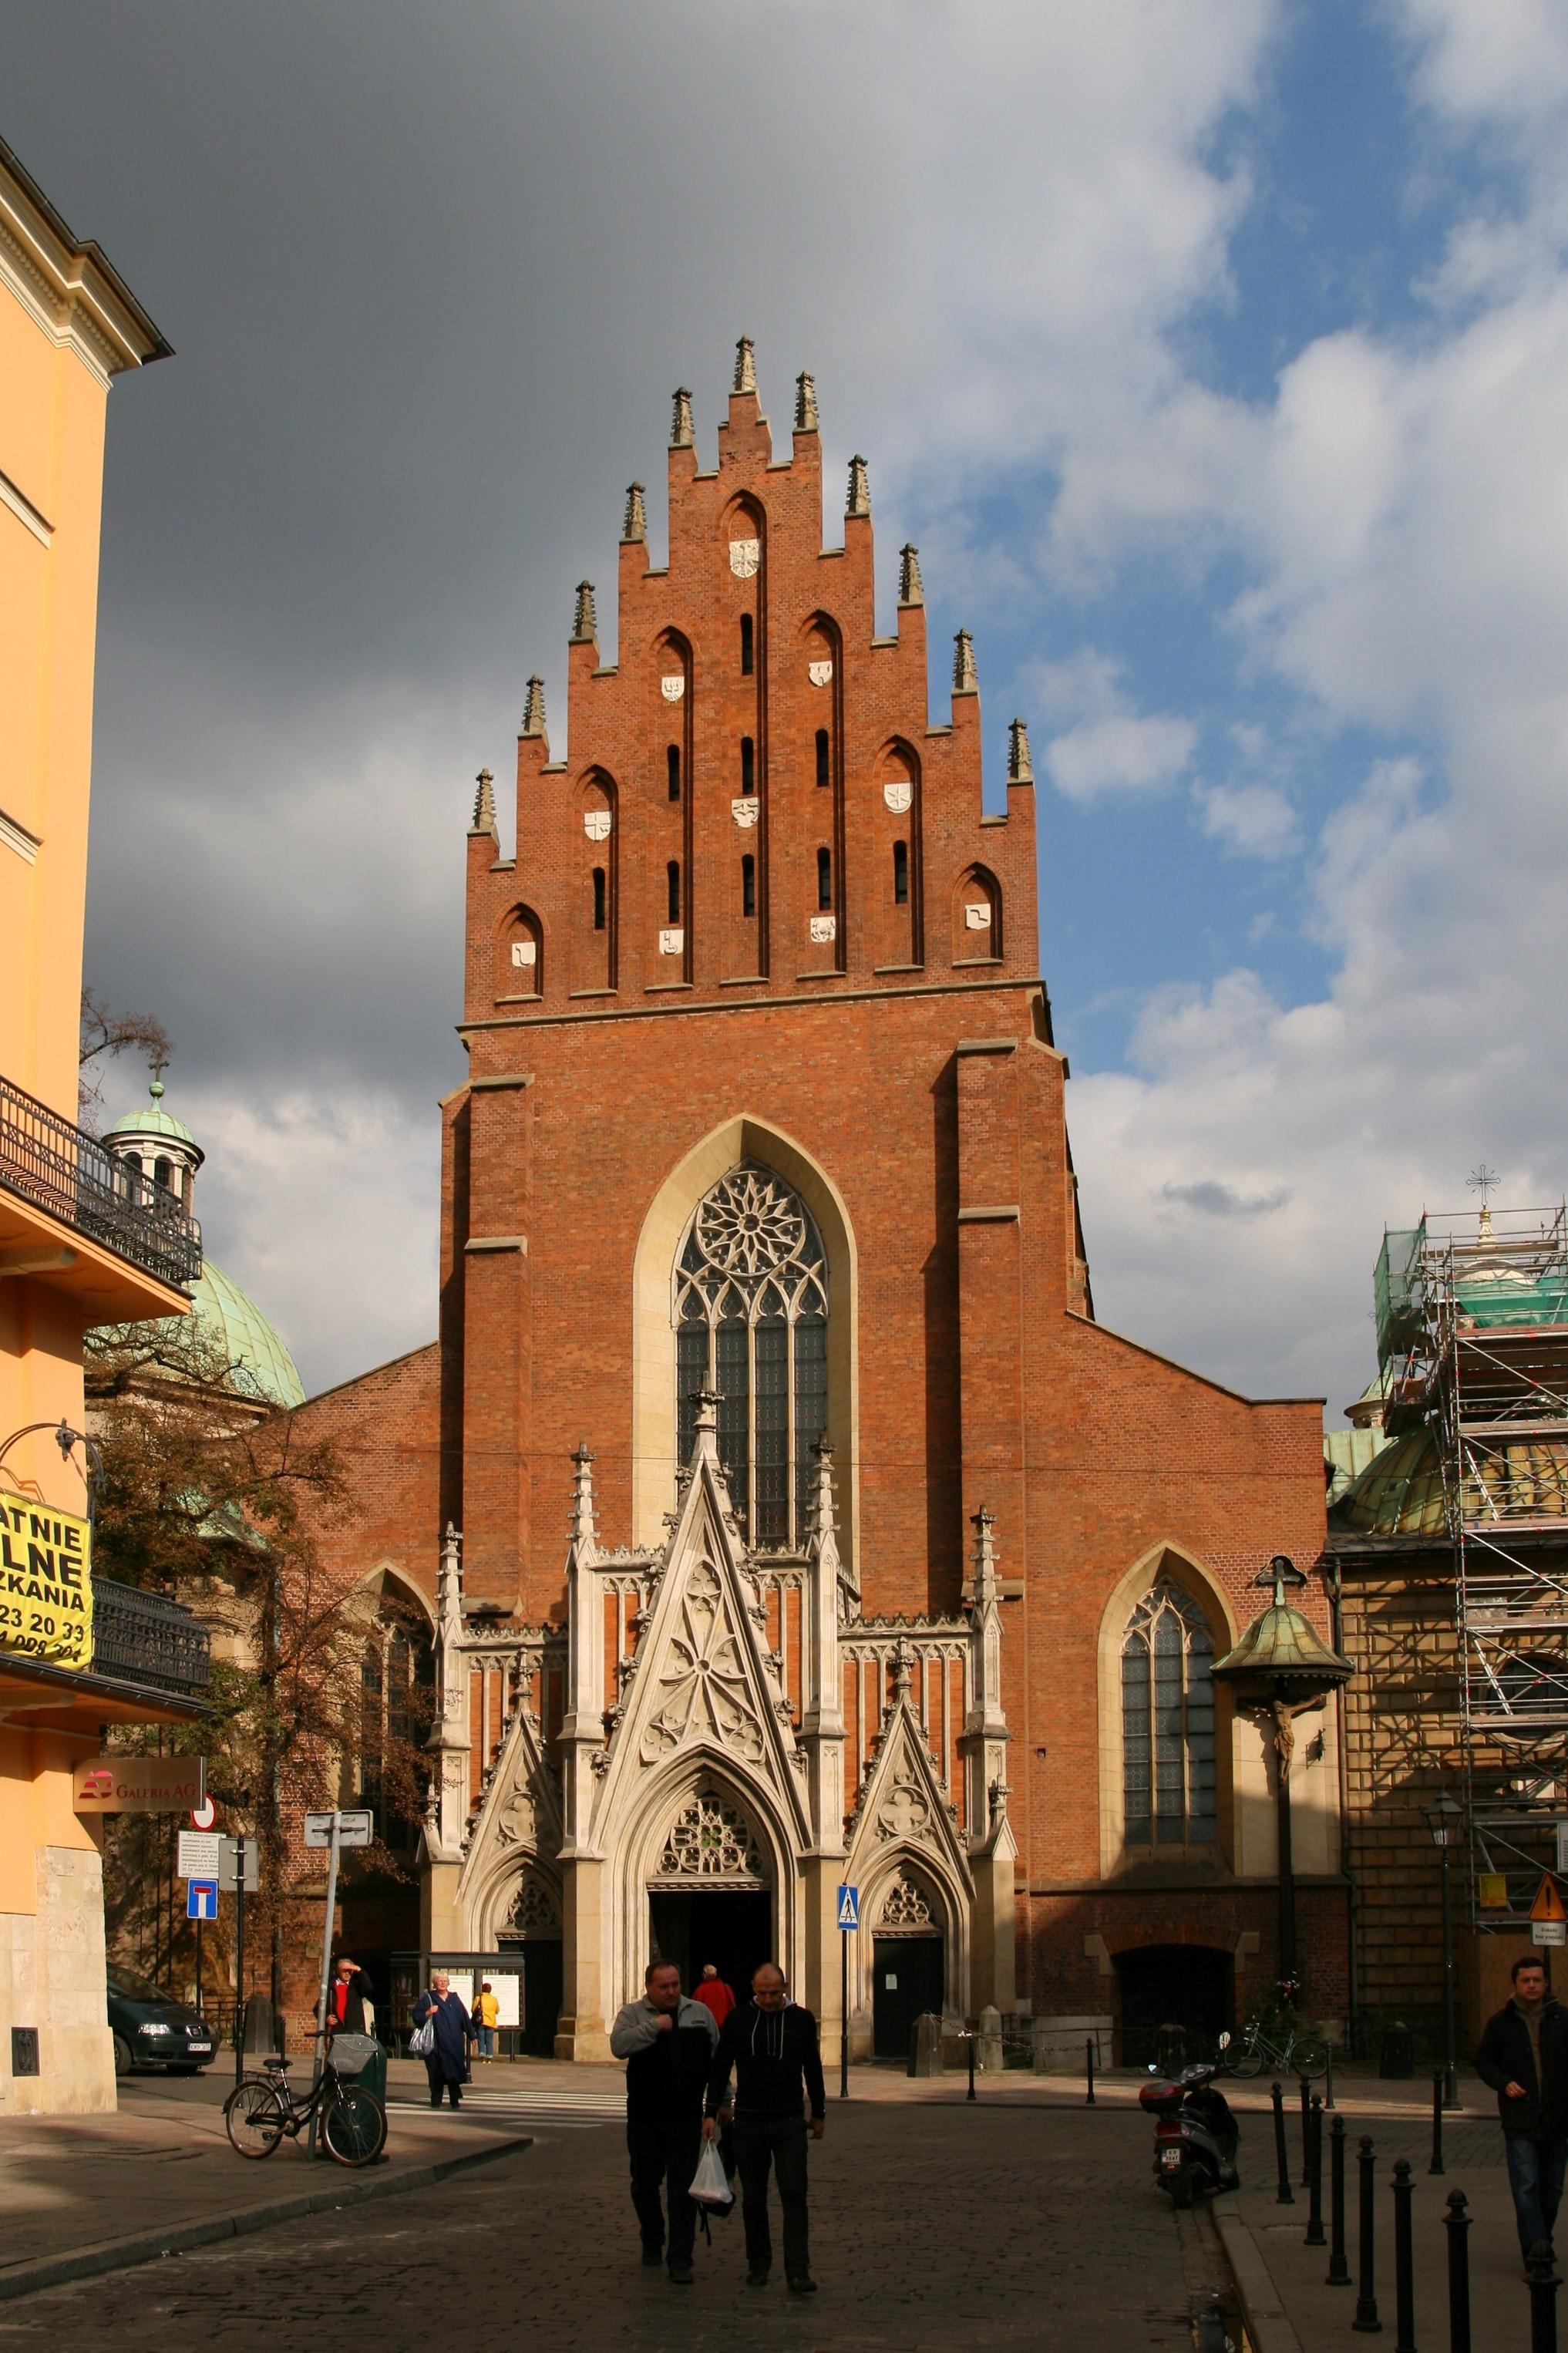 Basilica of Holy Trinity, Kraków - Wikipedia